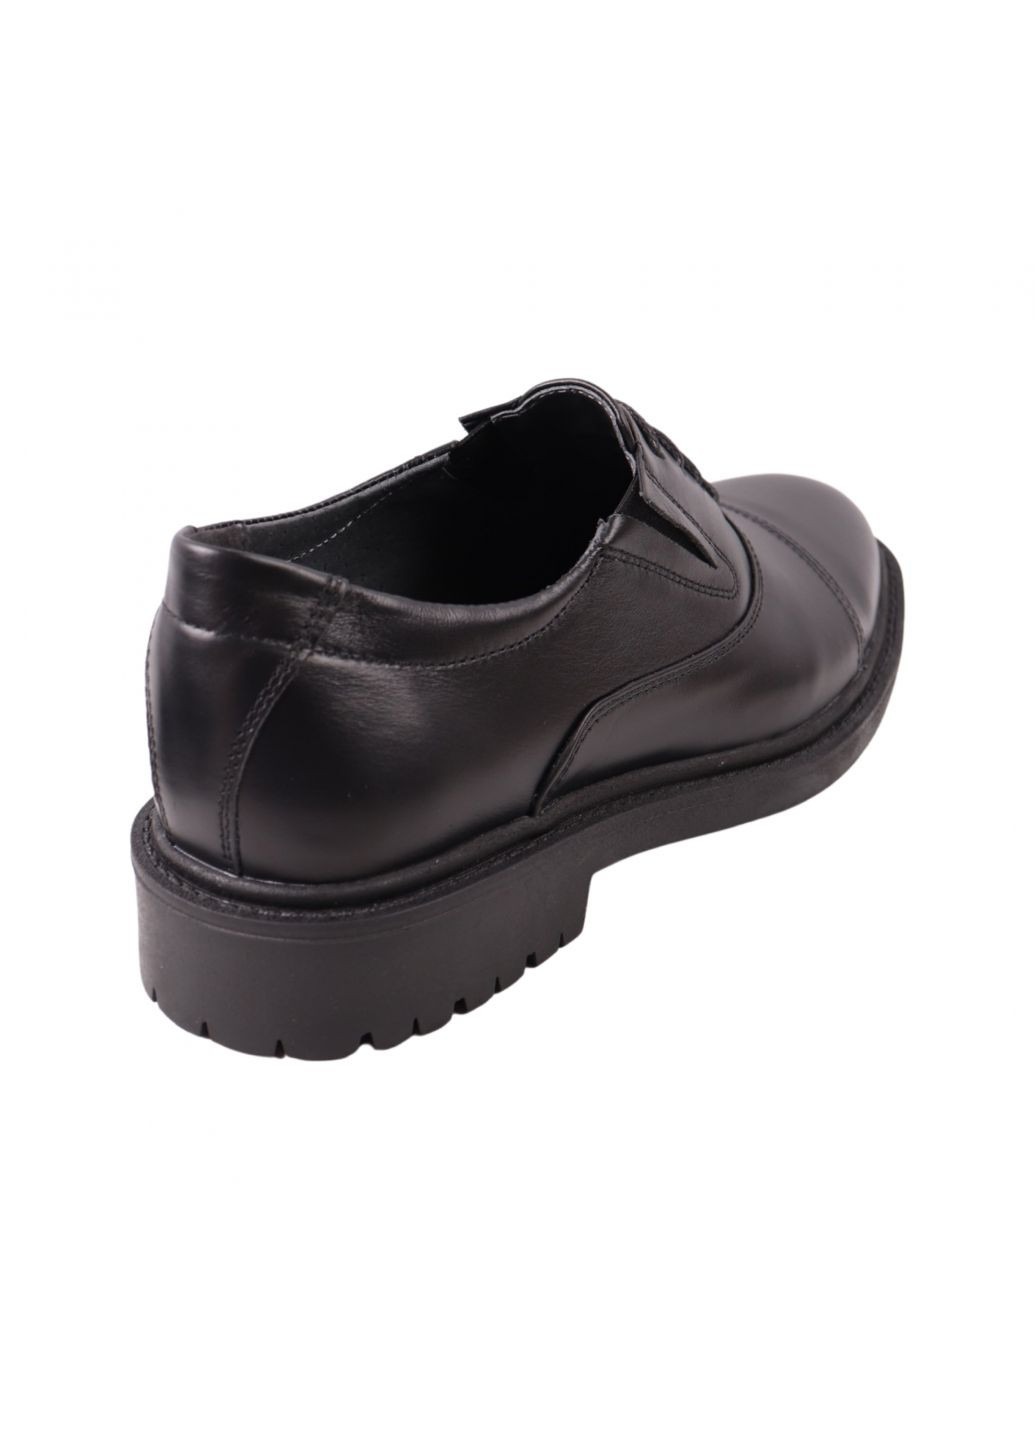 Туфлі чоловічі чорні натуральна шкіра Maxus Shoes 138-23dtc (262455306)